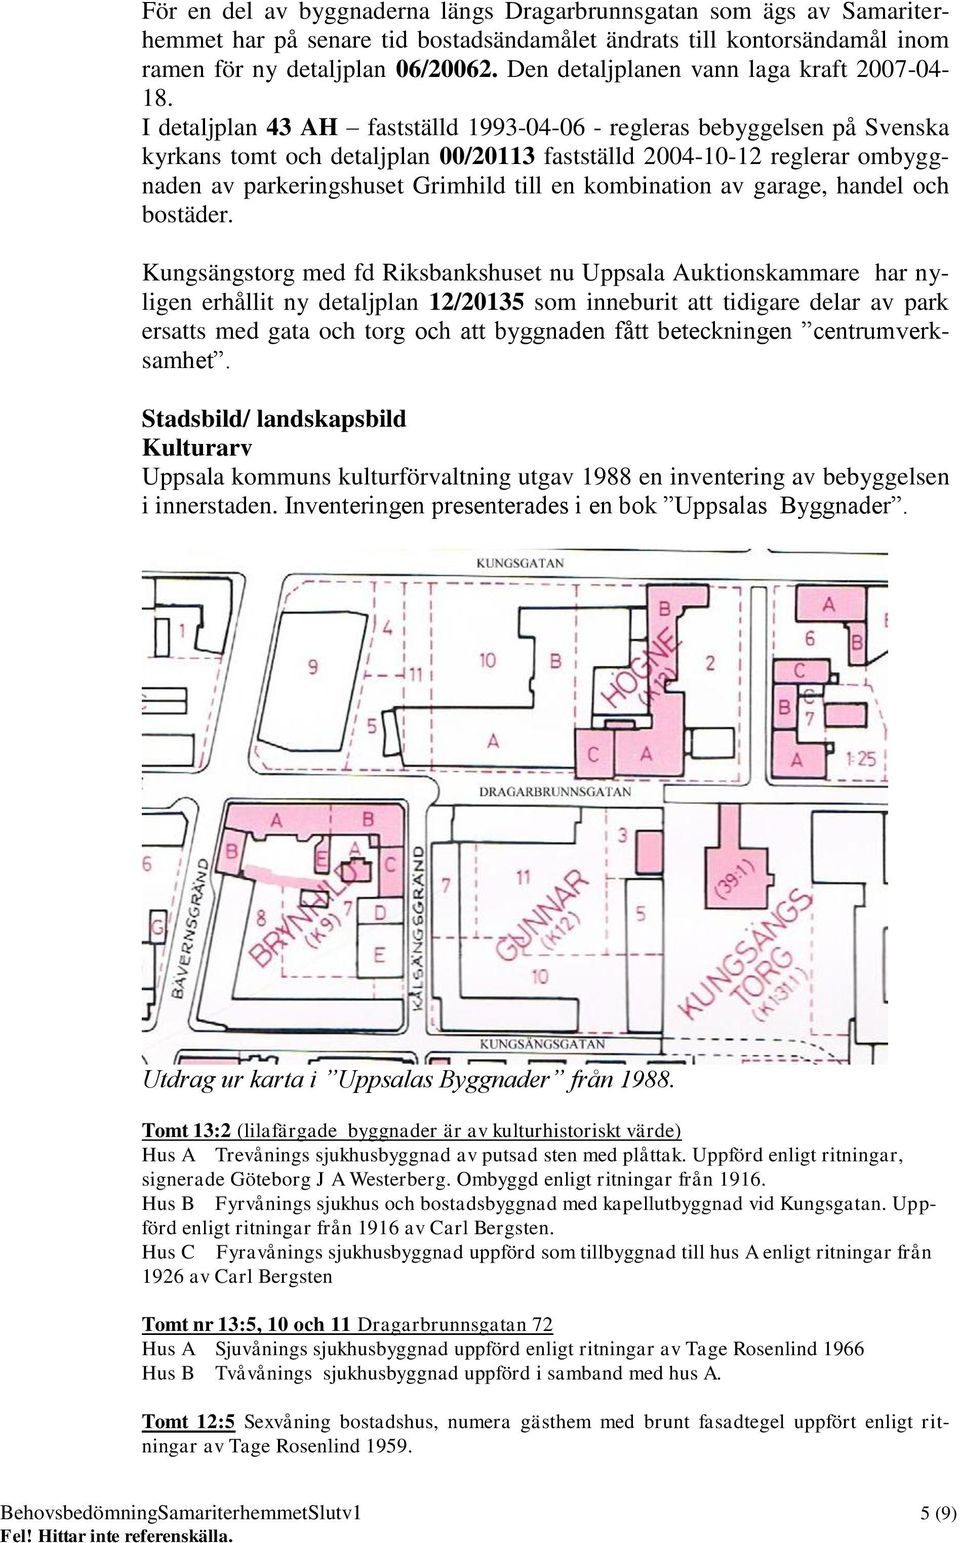 I detaljplan 43 AH fastställd 1993-04-06 - regleras bebyggelsen på Svenska kyrkans tomt och detaljplan 00/20113 fastställd 2004-10-12 reglerar ombyggnaden av parkeringshuset Grimhild till en